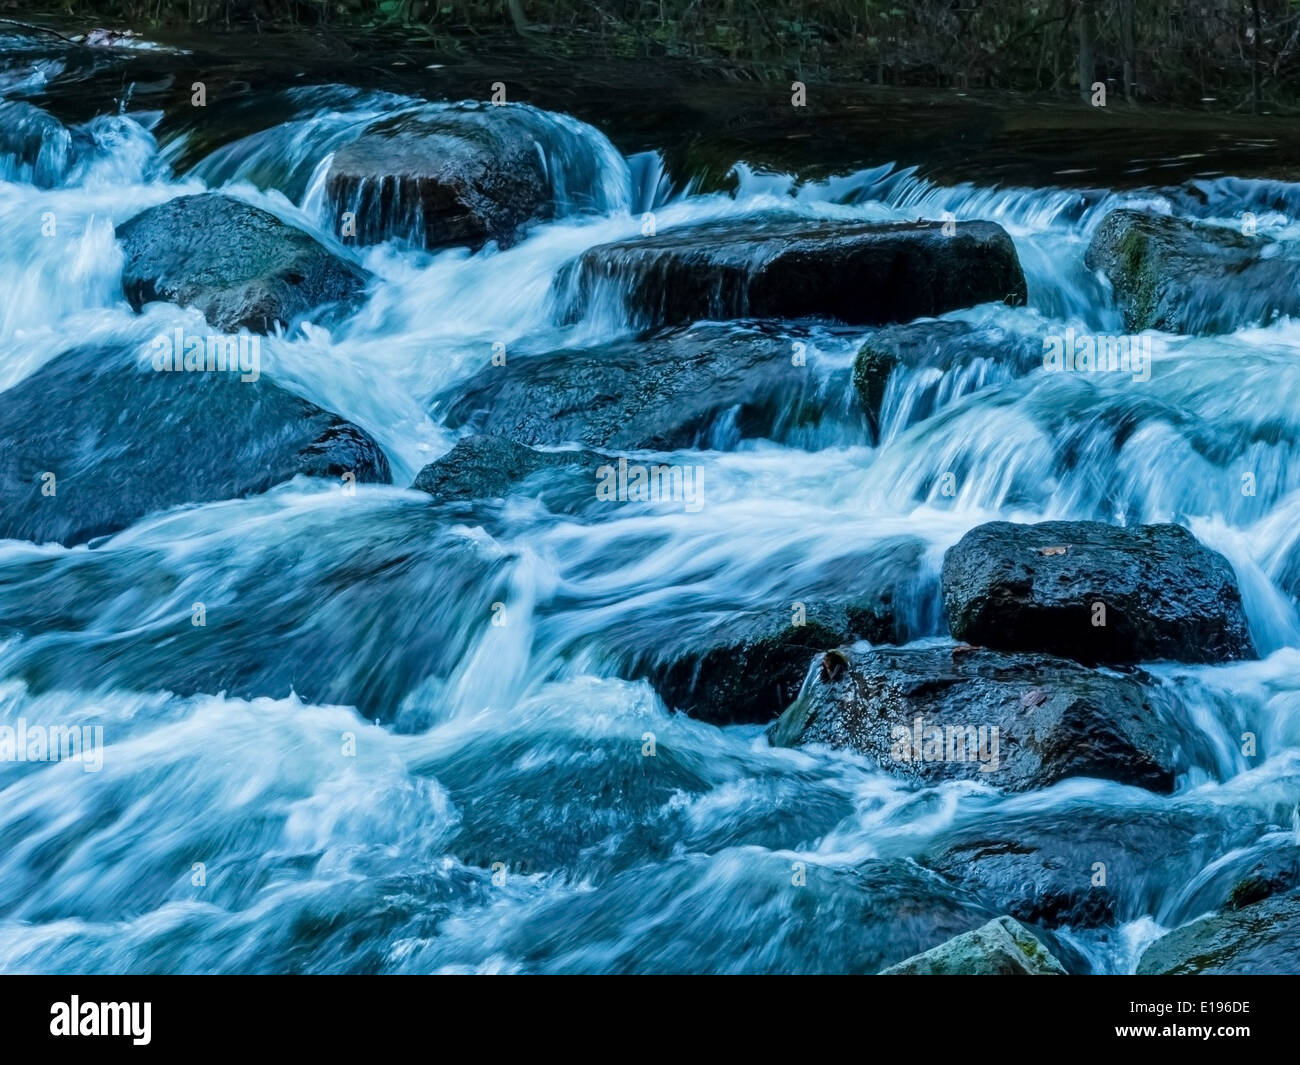 Ein Bach mit Steinen und fliessendem Wasser. Landschaft erleben in der Natur. Stock Photo